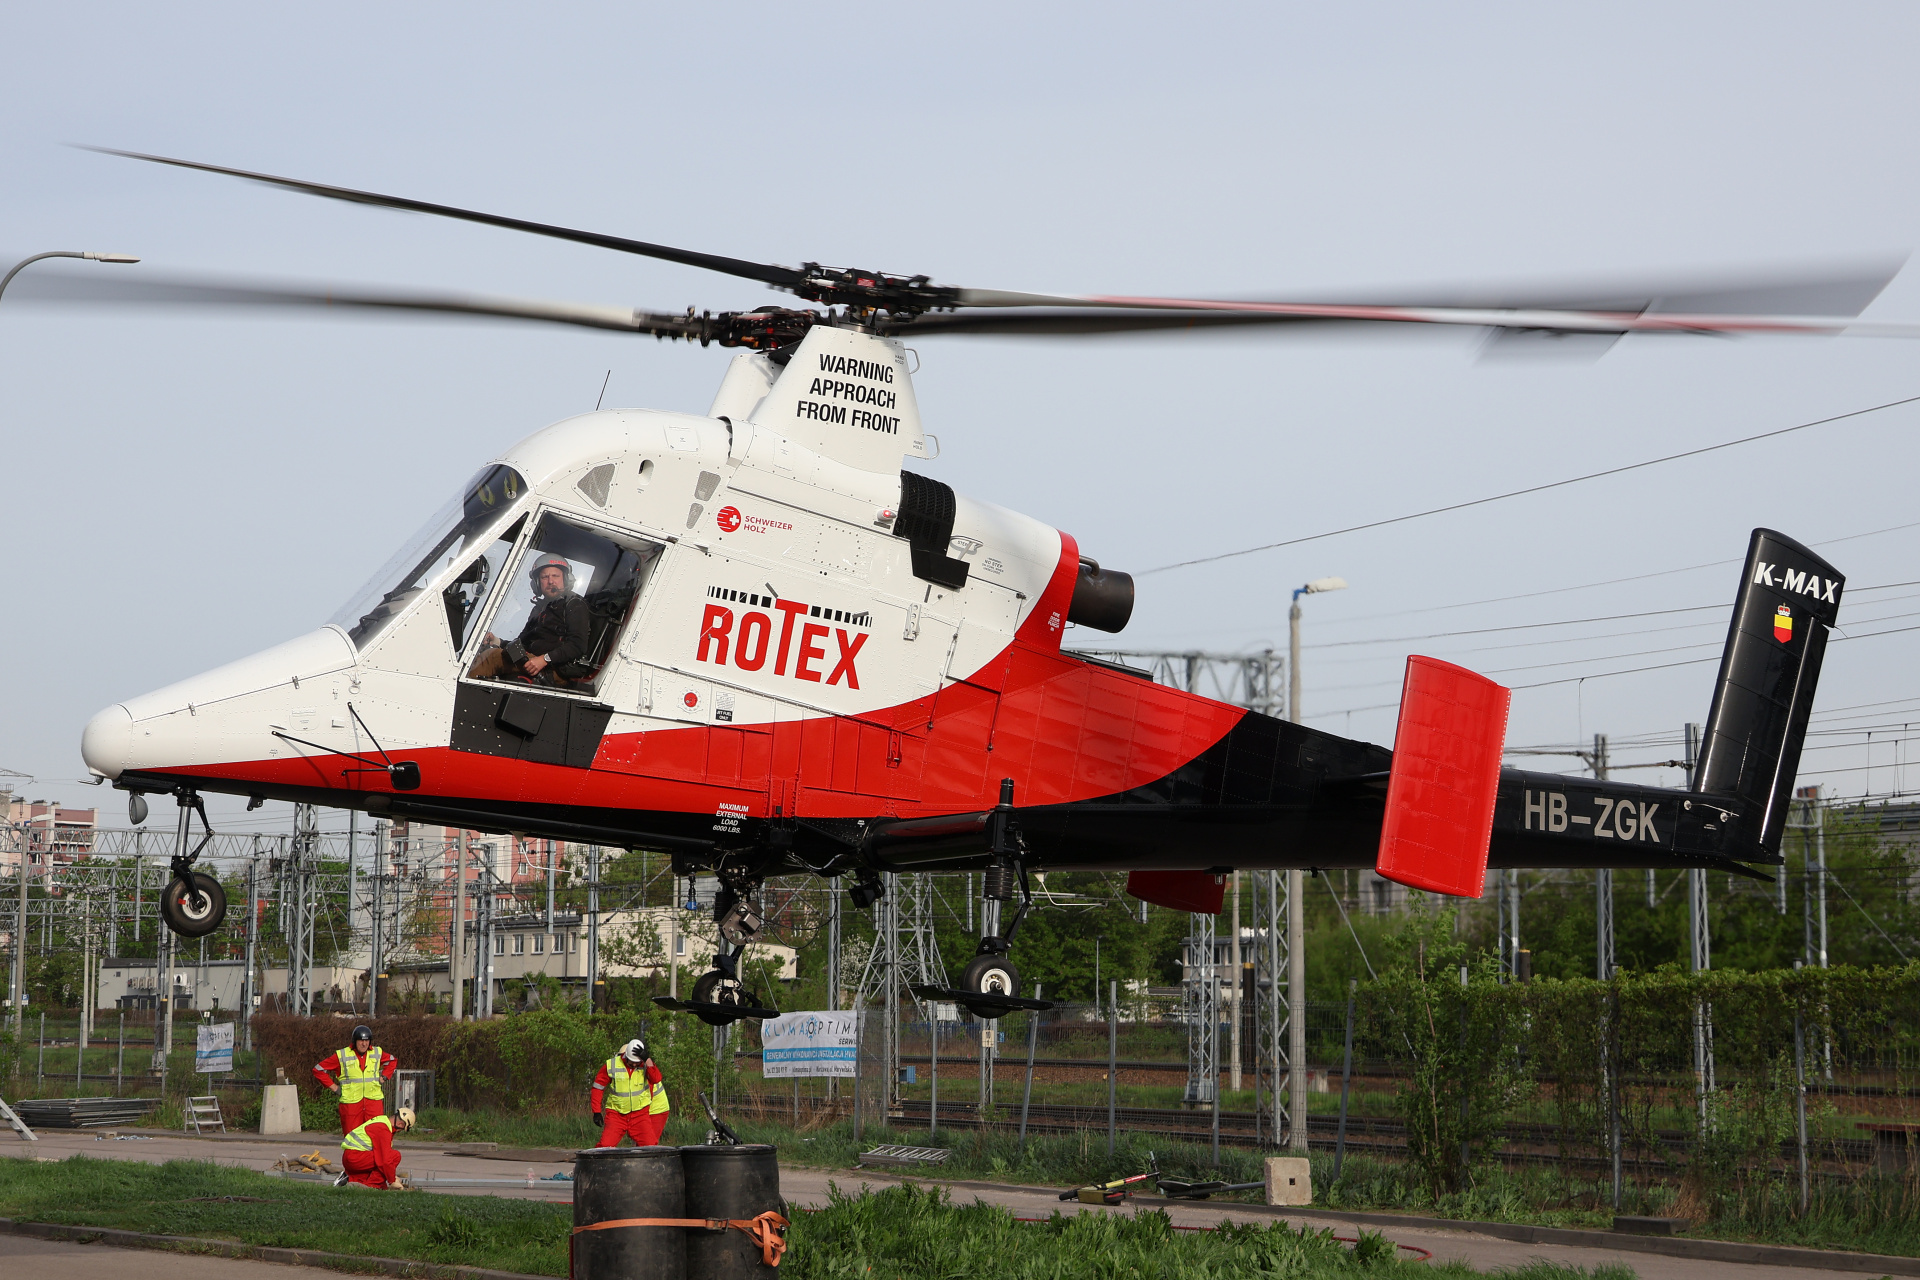 HB-ZGK, Rotex Helicopter (Aircraft » Kaman K-1200 K-MAX)